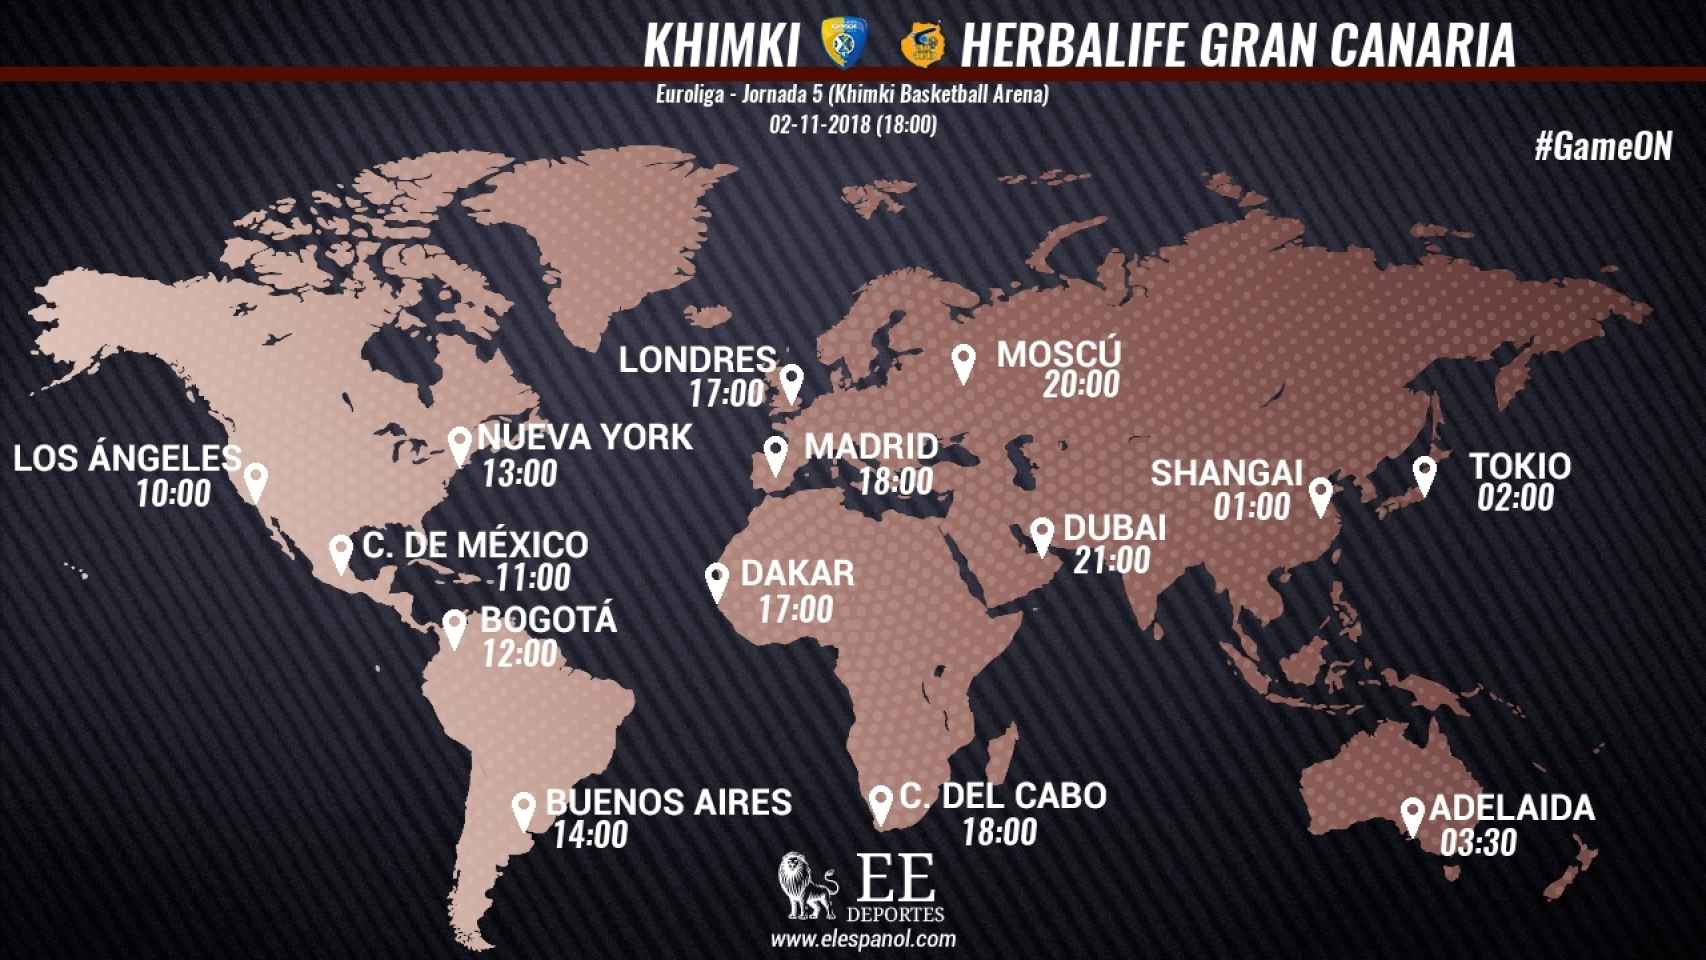 Horario del Khimki - Herbalife Gran Canaria